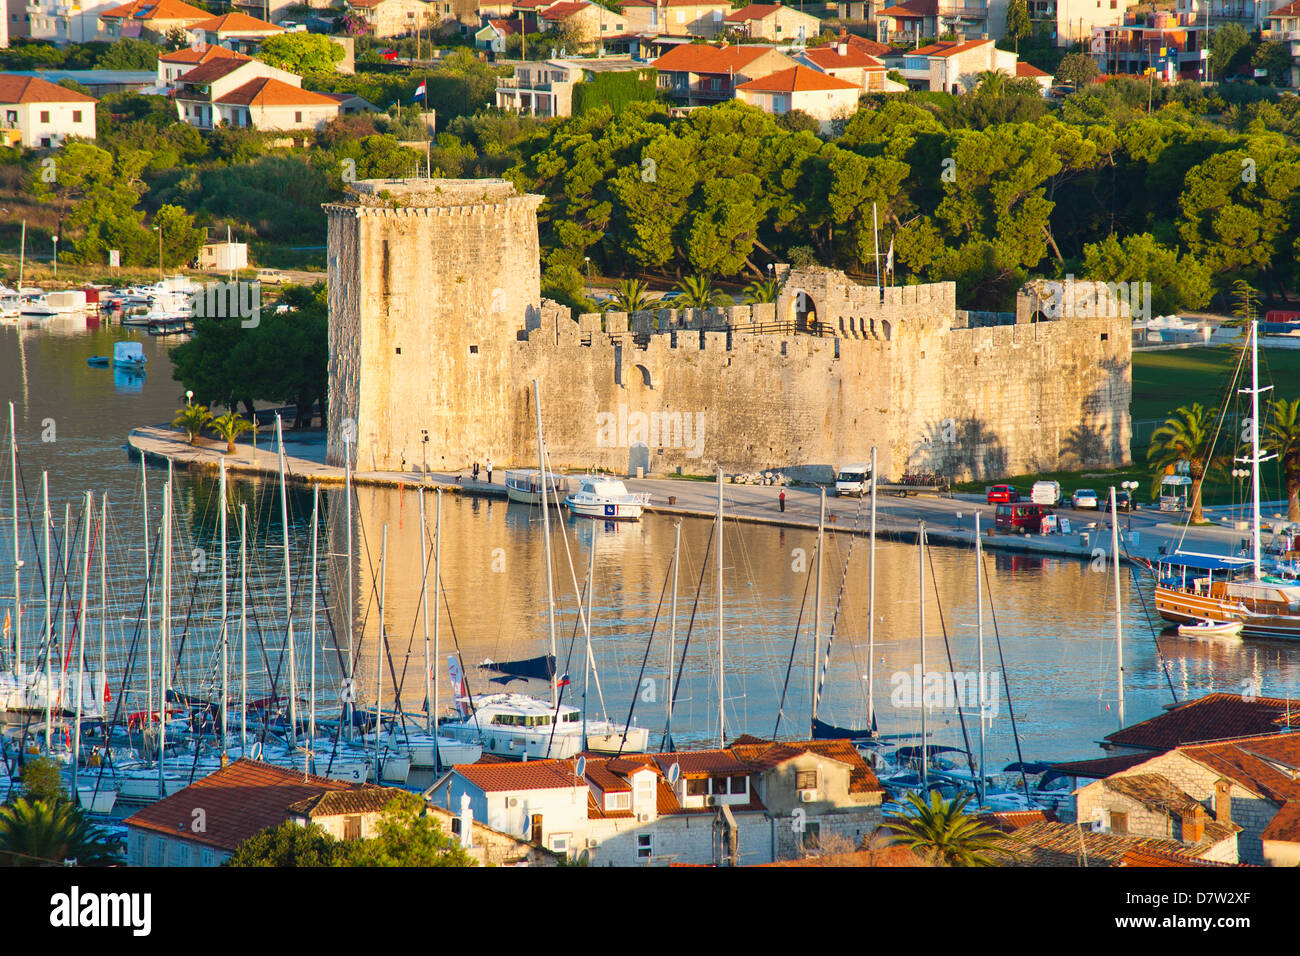 Kamerlengo Fortress (Gradina Kamerlengo) at sunrise, Trogir, UNESCO World Heritage Site, Dalmatian Coast, Adriatic, Croatia Stock Photo